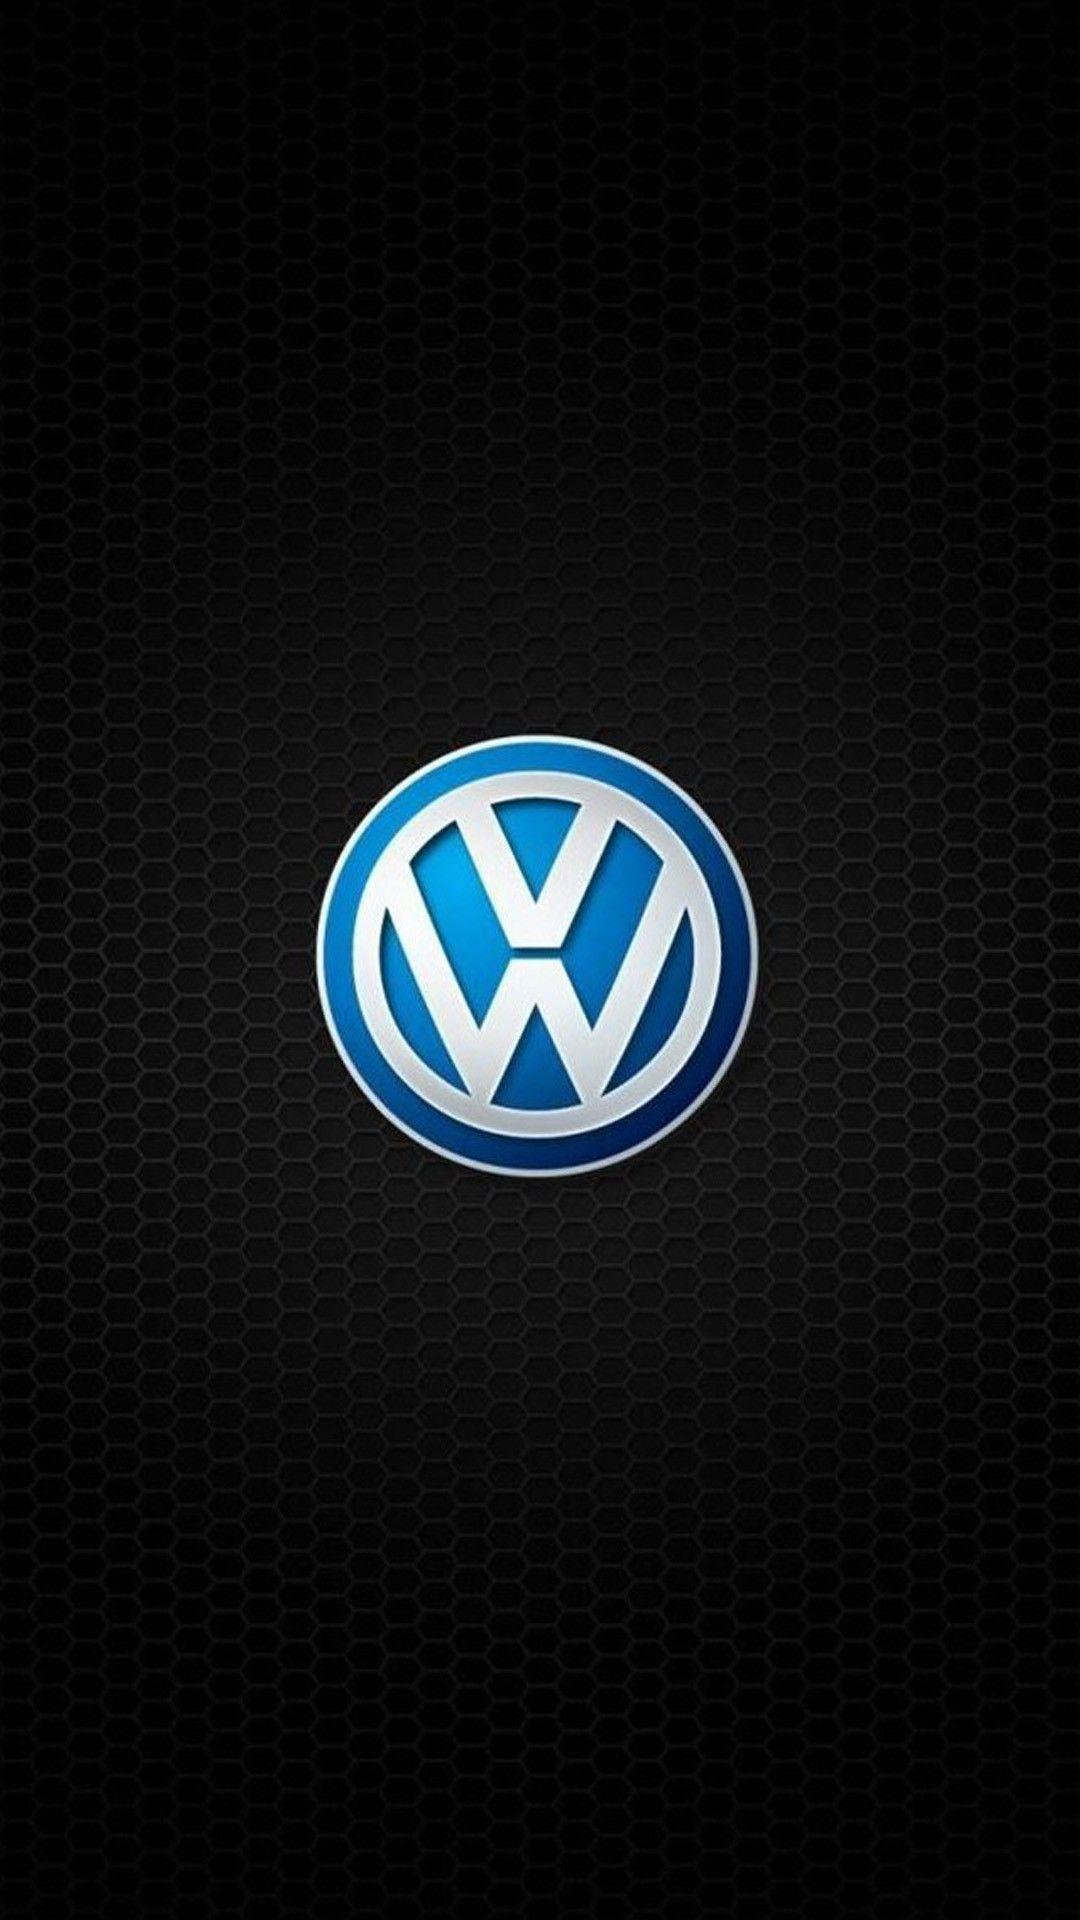 Volkswagen Wallpapers - Top Những Hình Ảnh Đẹp